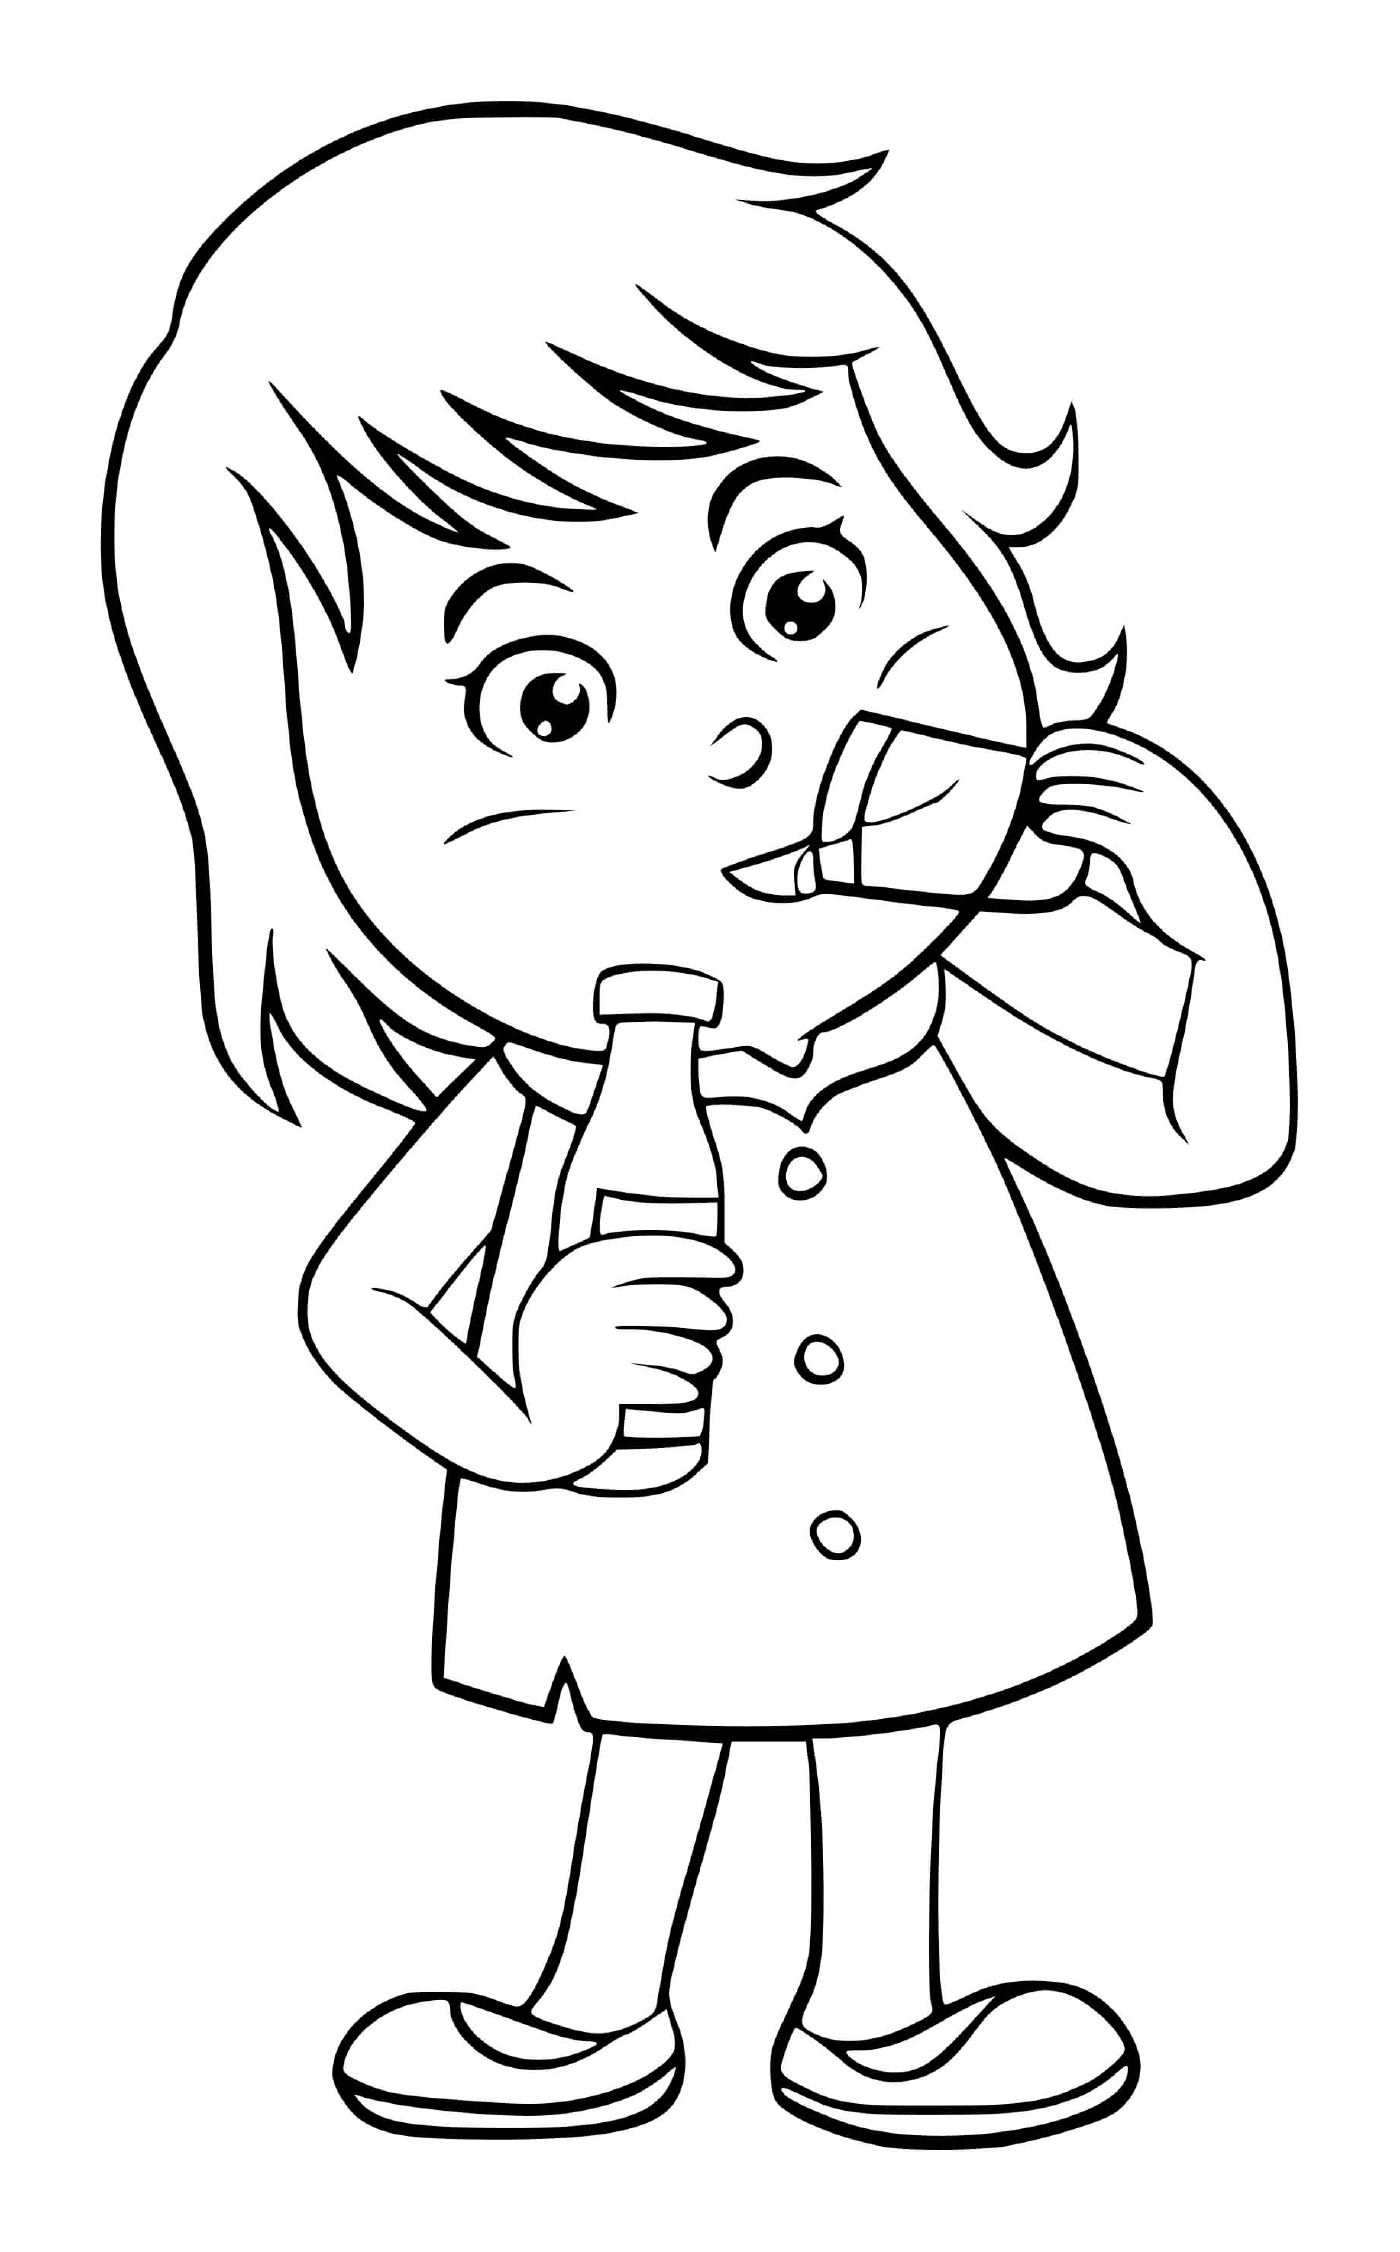  儿童饮喝口渴的水 